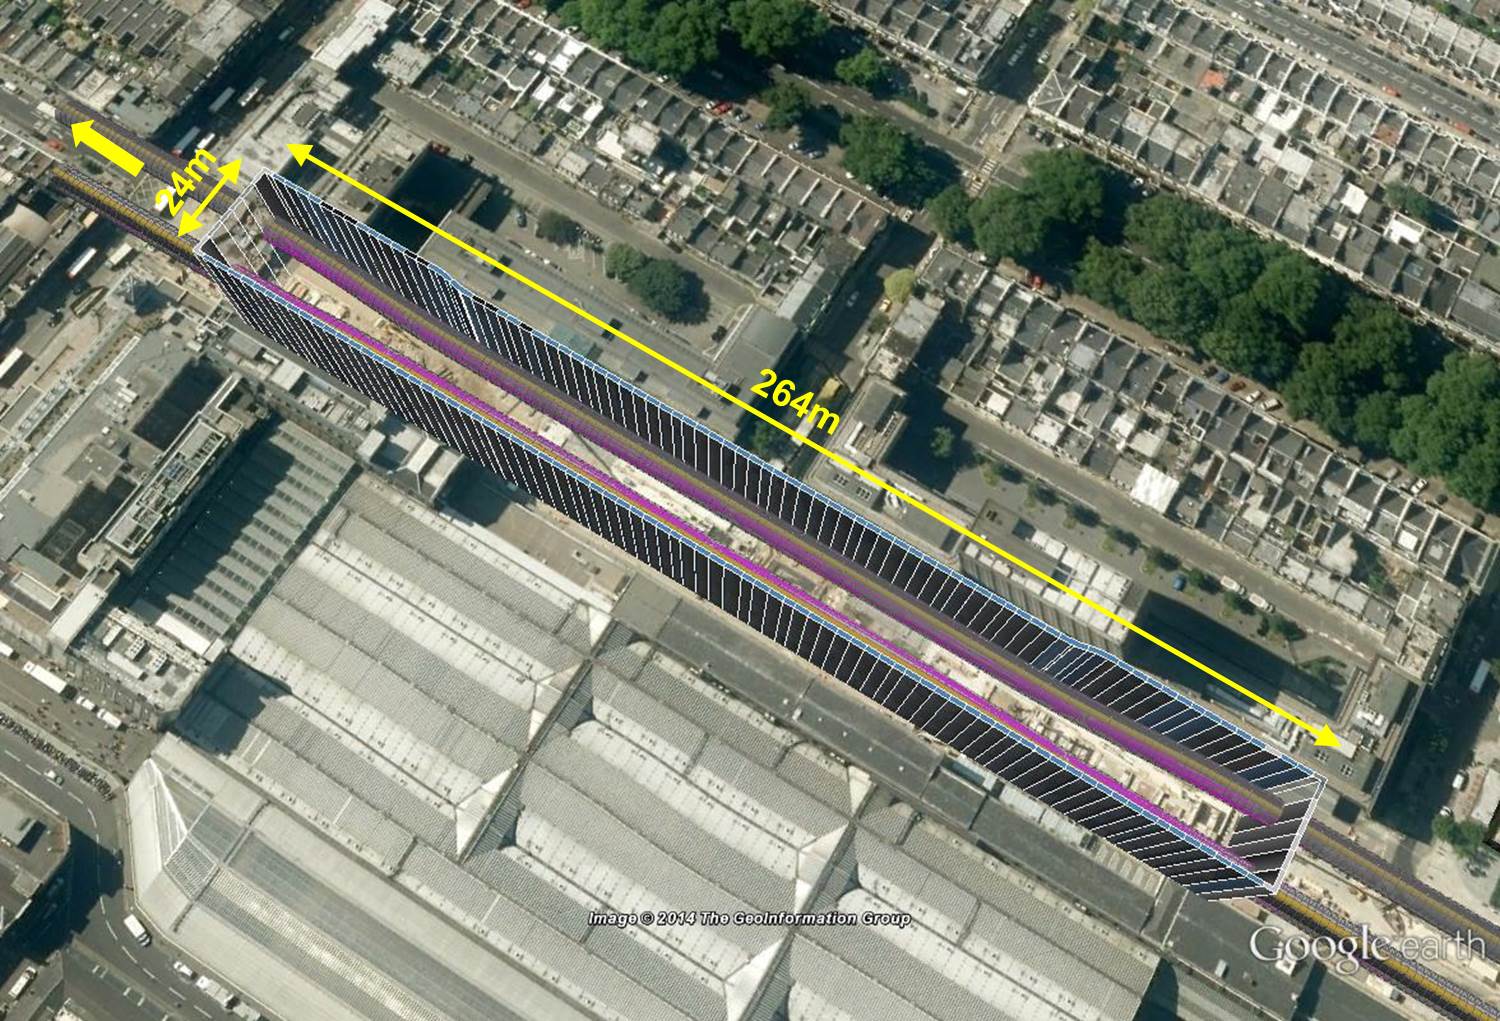 Figure 2. Paddington Station Box and Tunnel Layout